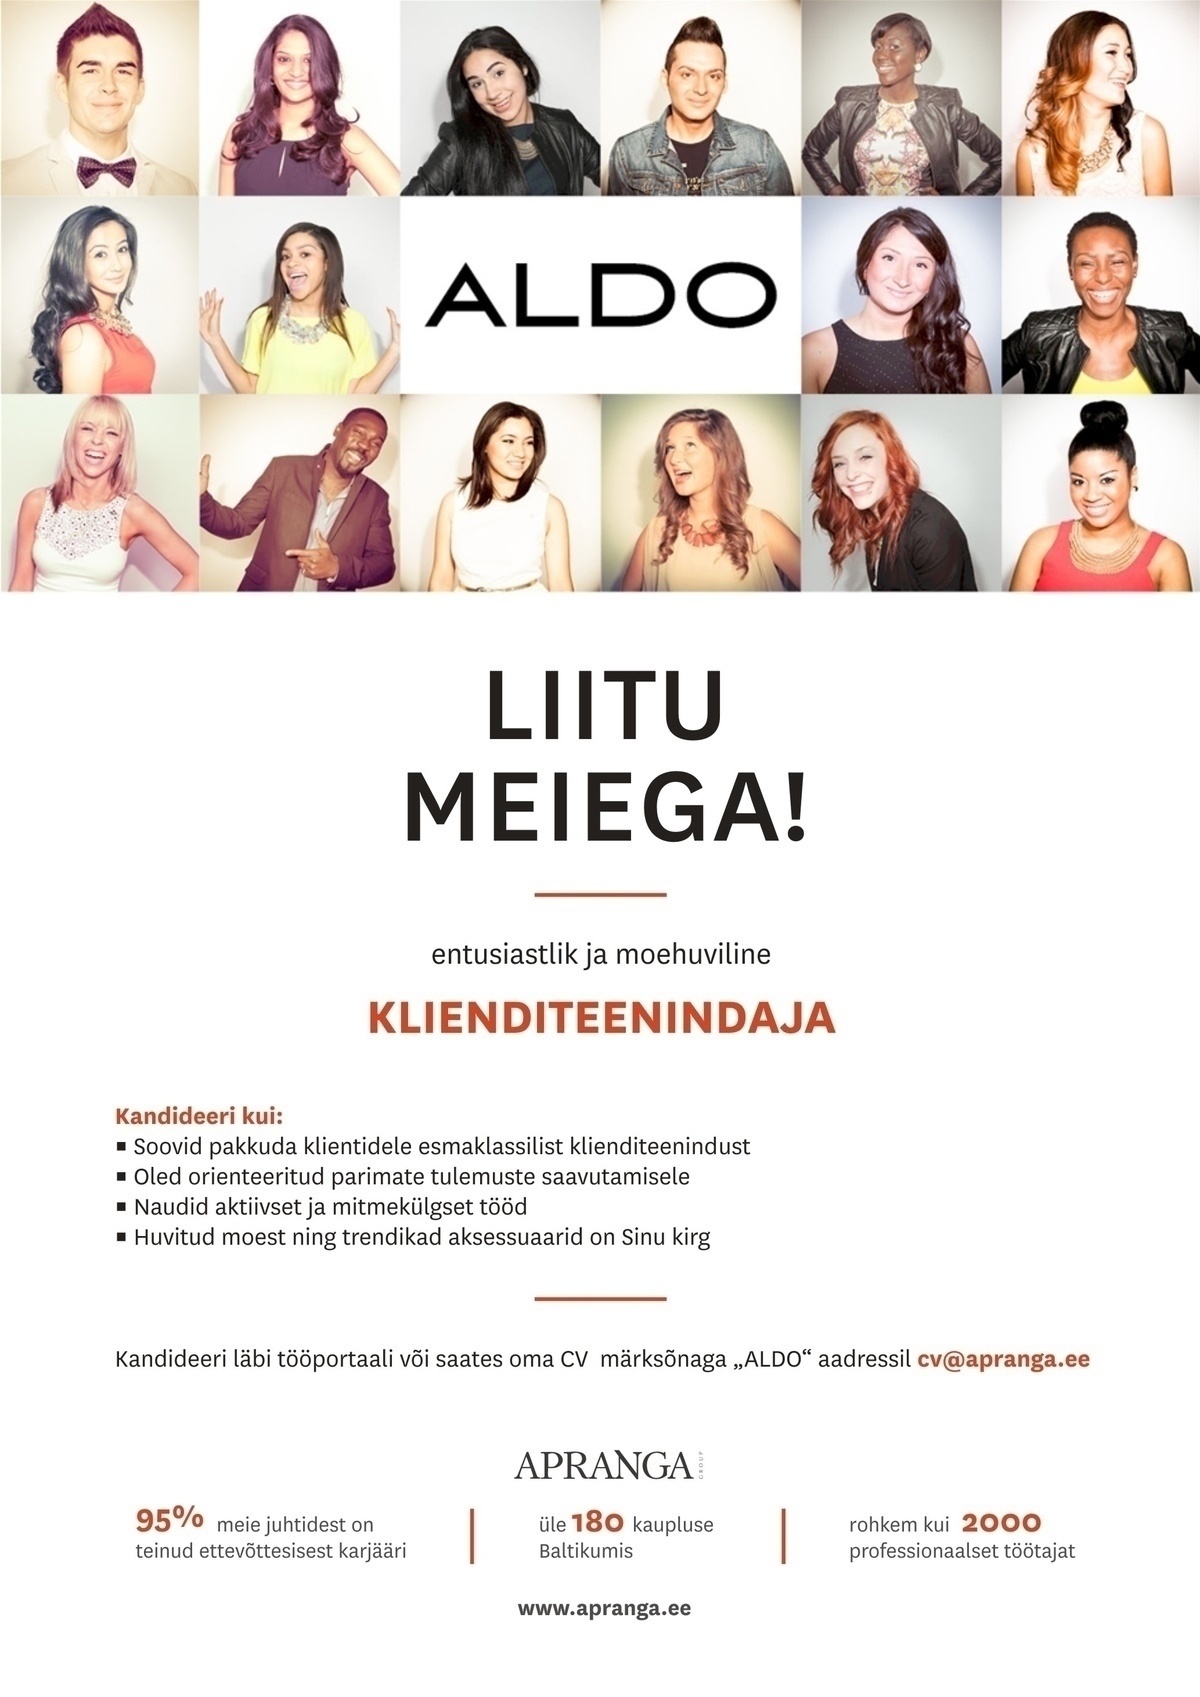 Apranga Estonia OÜ Viru Keskuse ALDO aktiivne klienditeenindaja